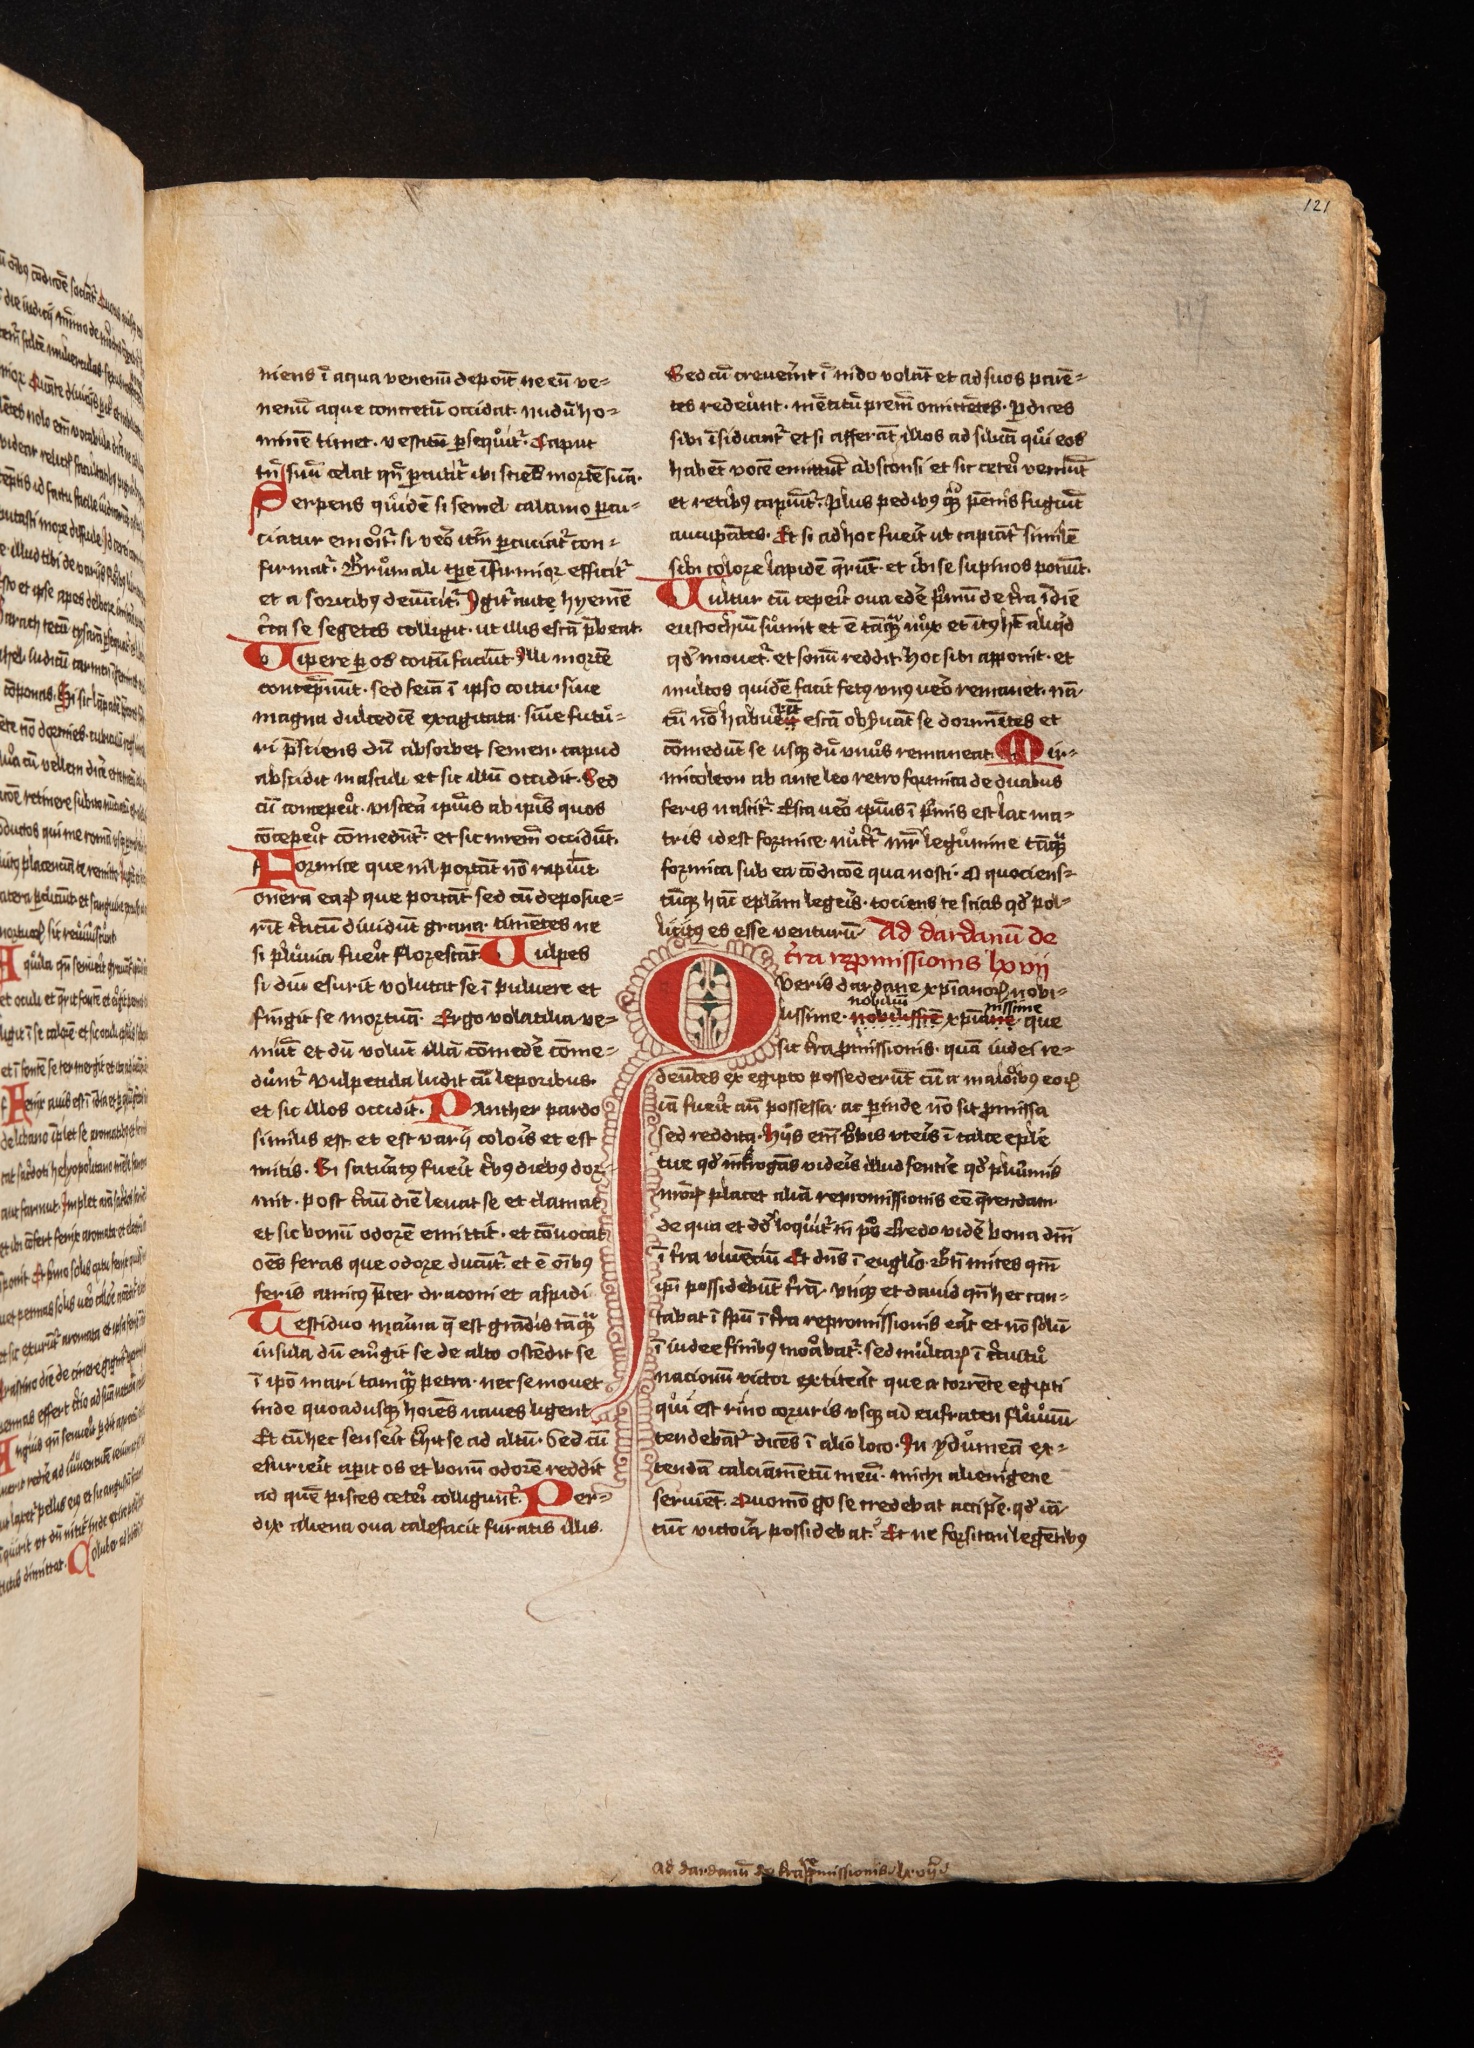 Hieronymus, Epistolae et alia ejus opuscula, tome I